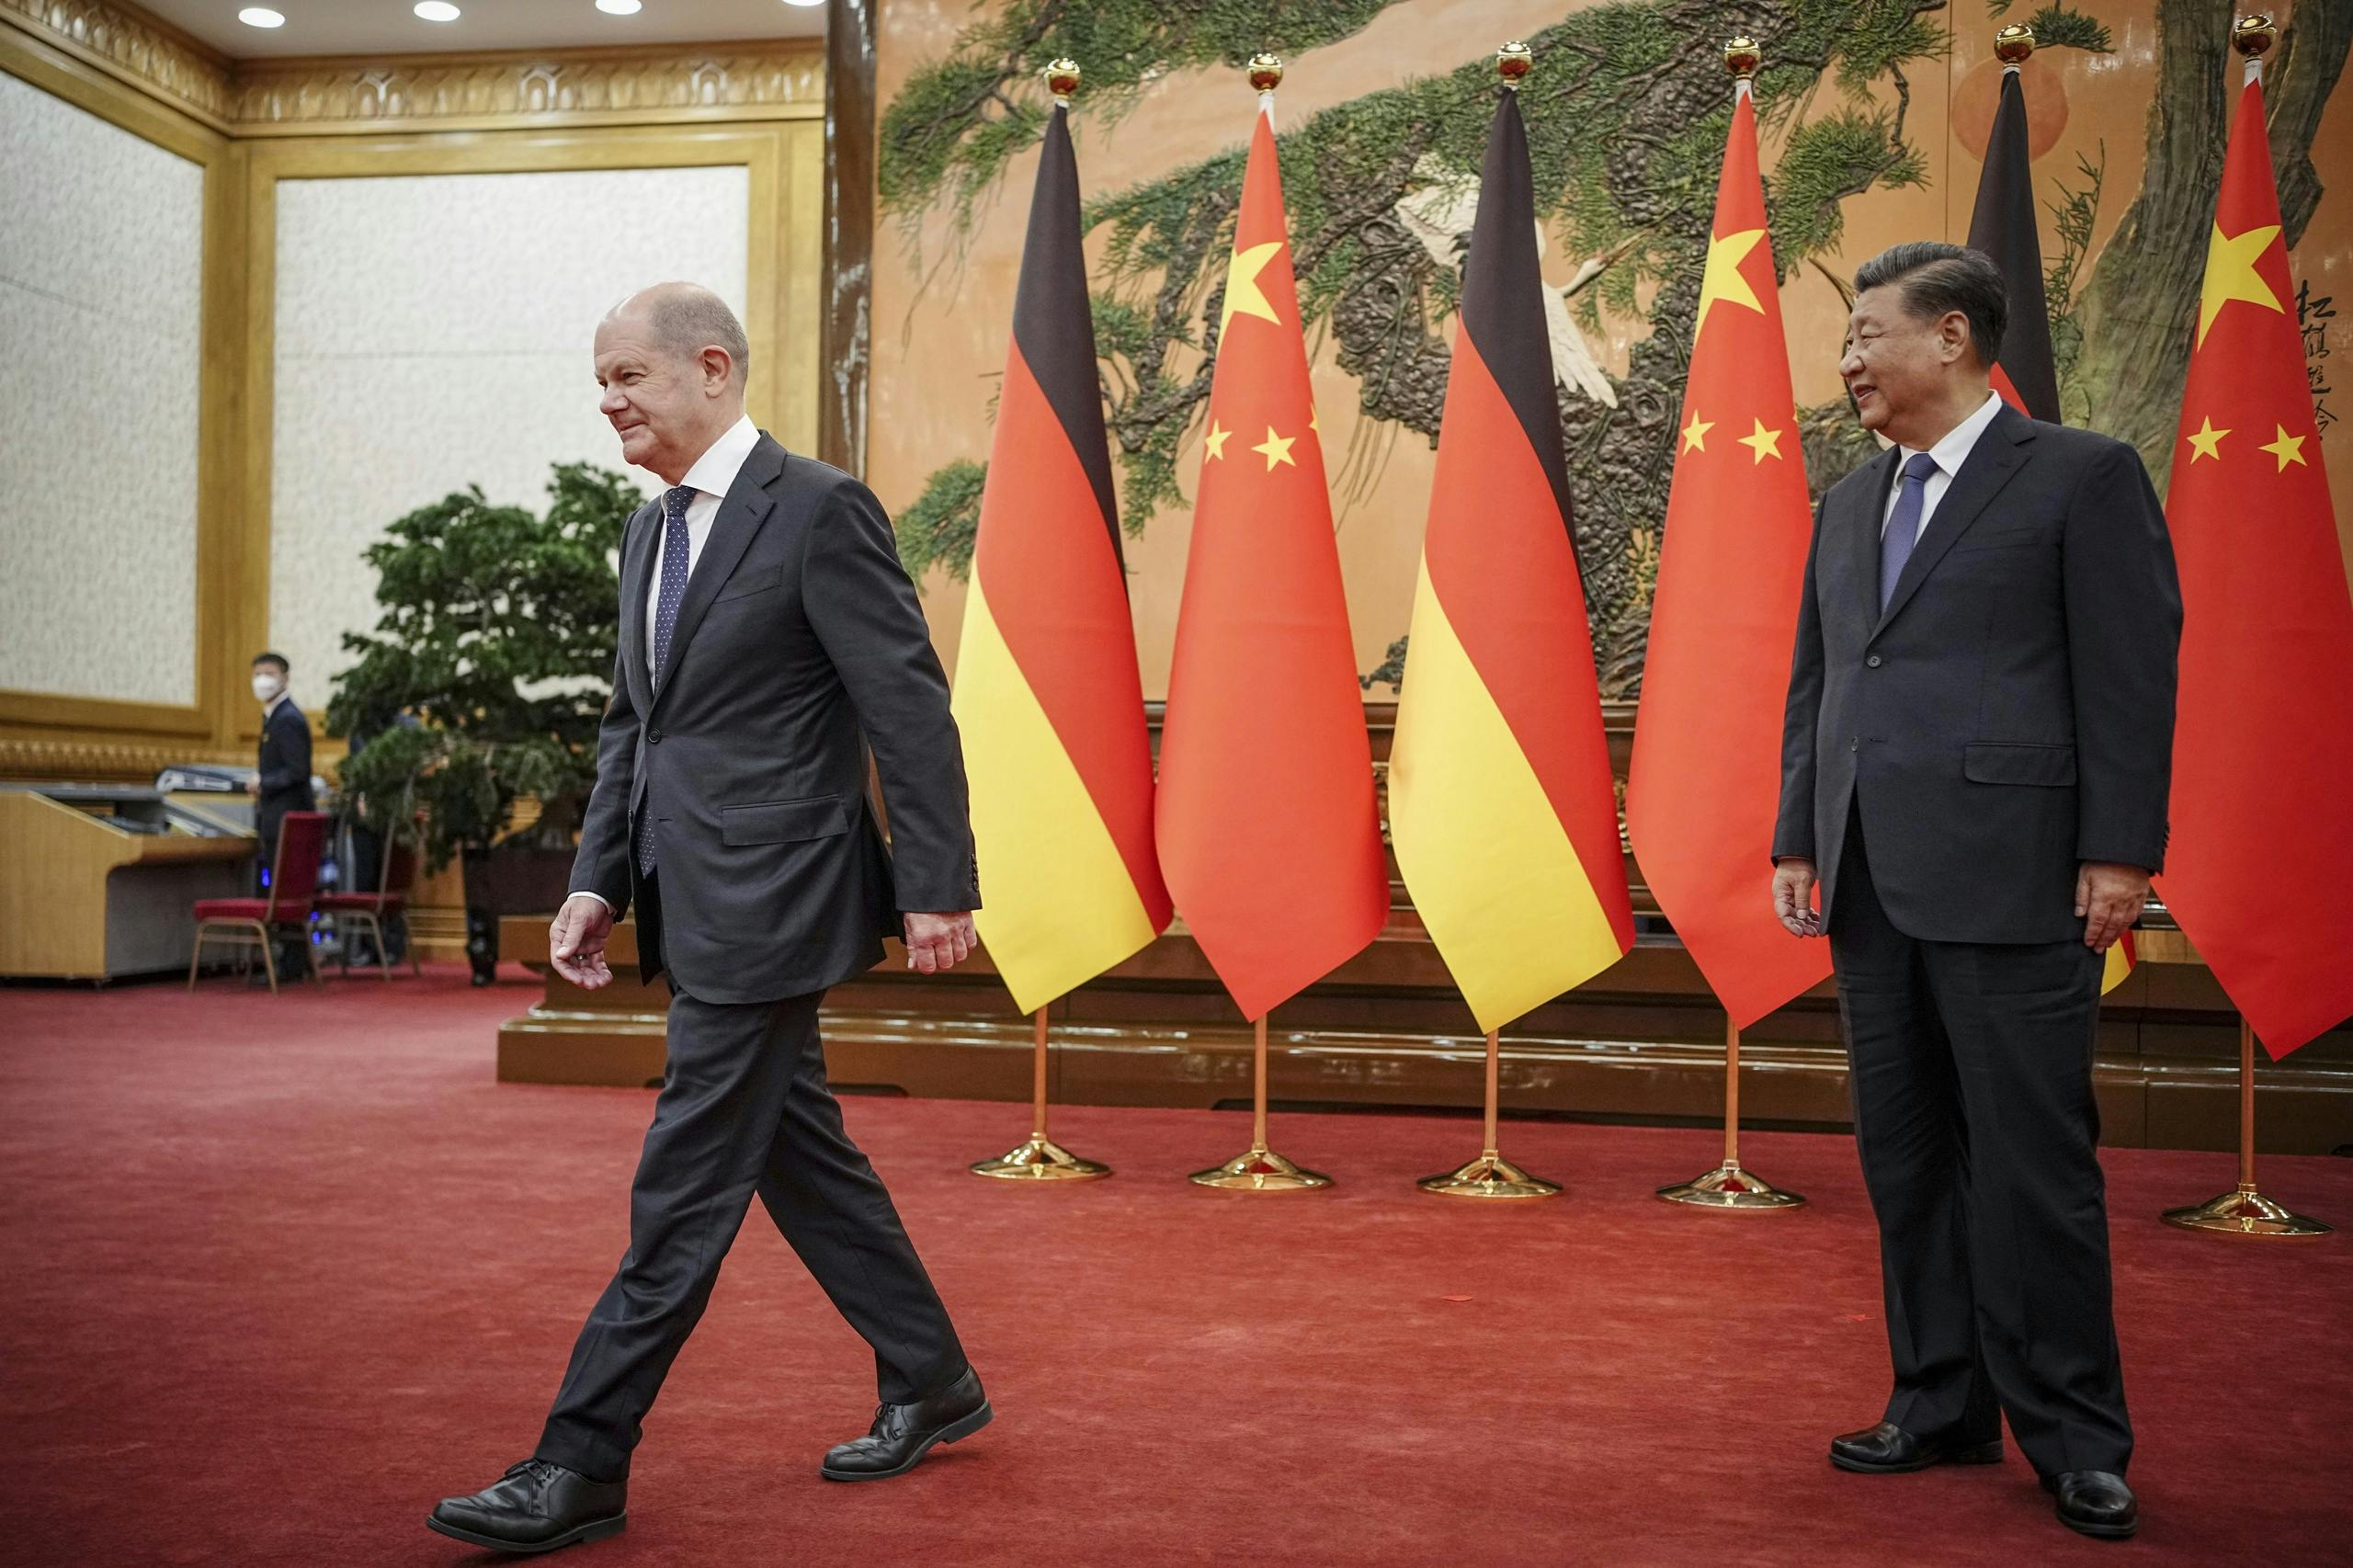 Deutschland stellt Exportkontrolle nach China in Frage